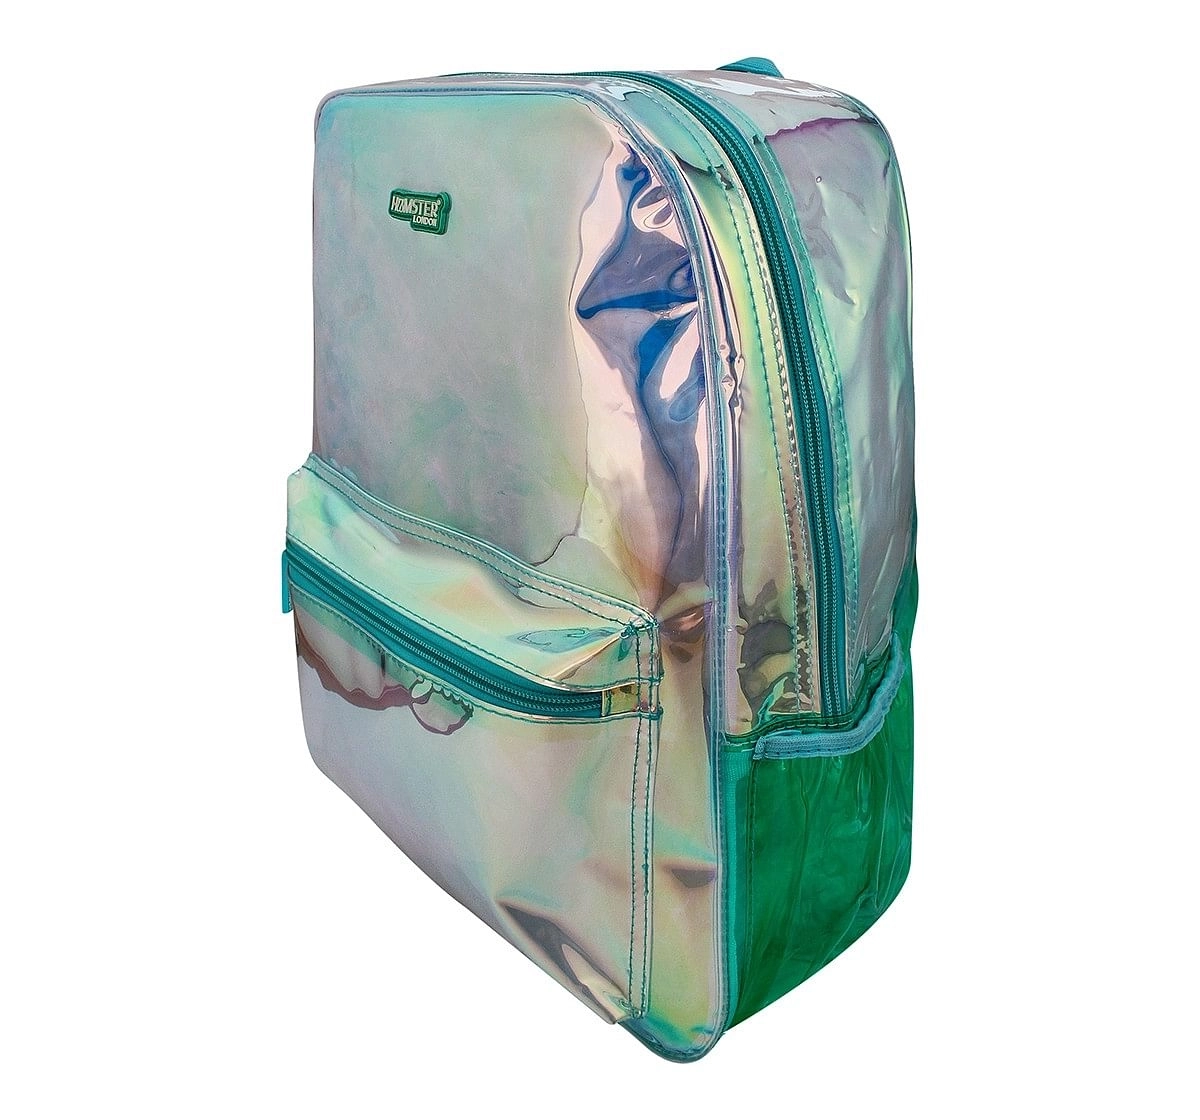 Hamster London Big Aqua Backpack for Kids age 3Y+ (Blue)